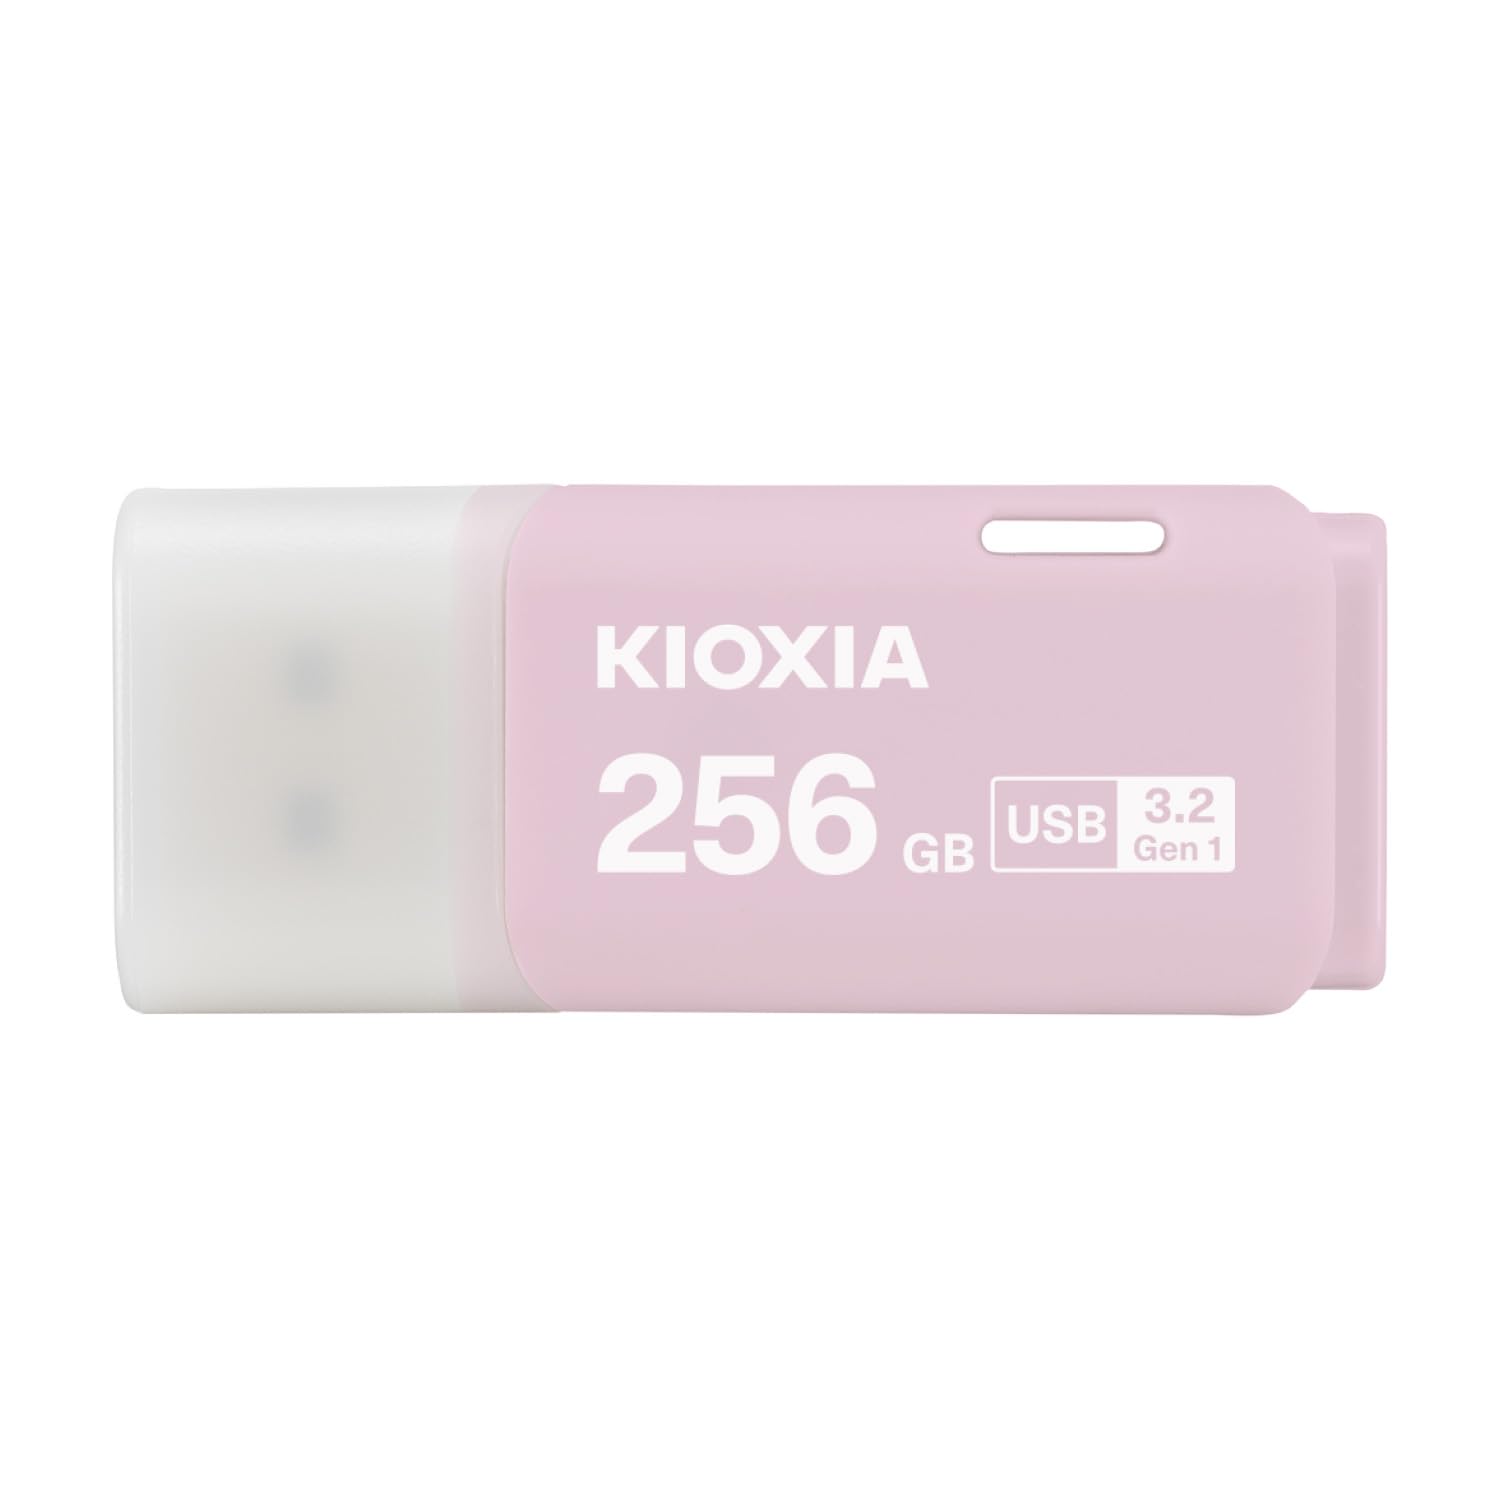 KIOXIA(キオクシア) 旧東芝メモリ USBフラッシュメモリ 256GB USB3.2 Gen1 日本製 国内サポート正規品 KLU301A256GP